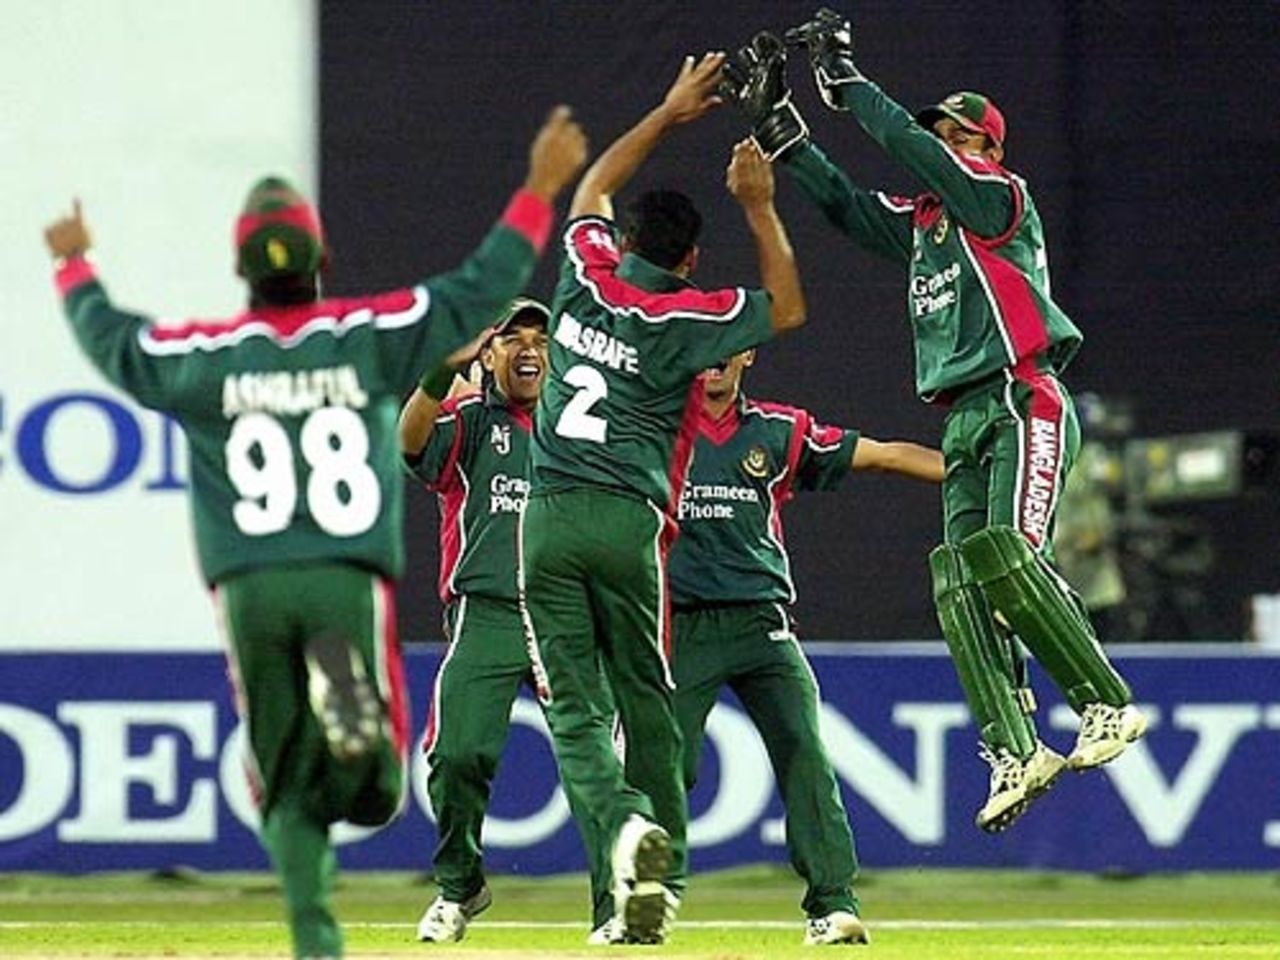 Bangladesh fielders rejoice after Sehwag was dismissed, Bangladesh v India, 2nd ODI, Dhaka, December 26, 2004